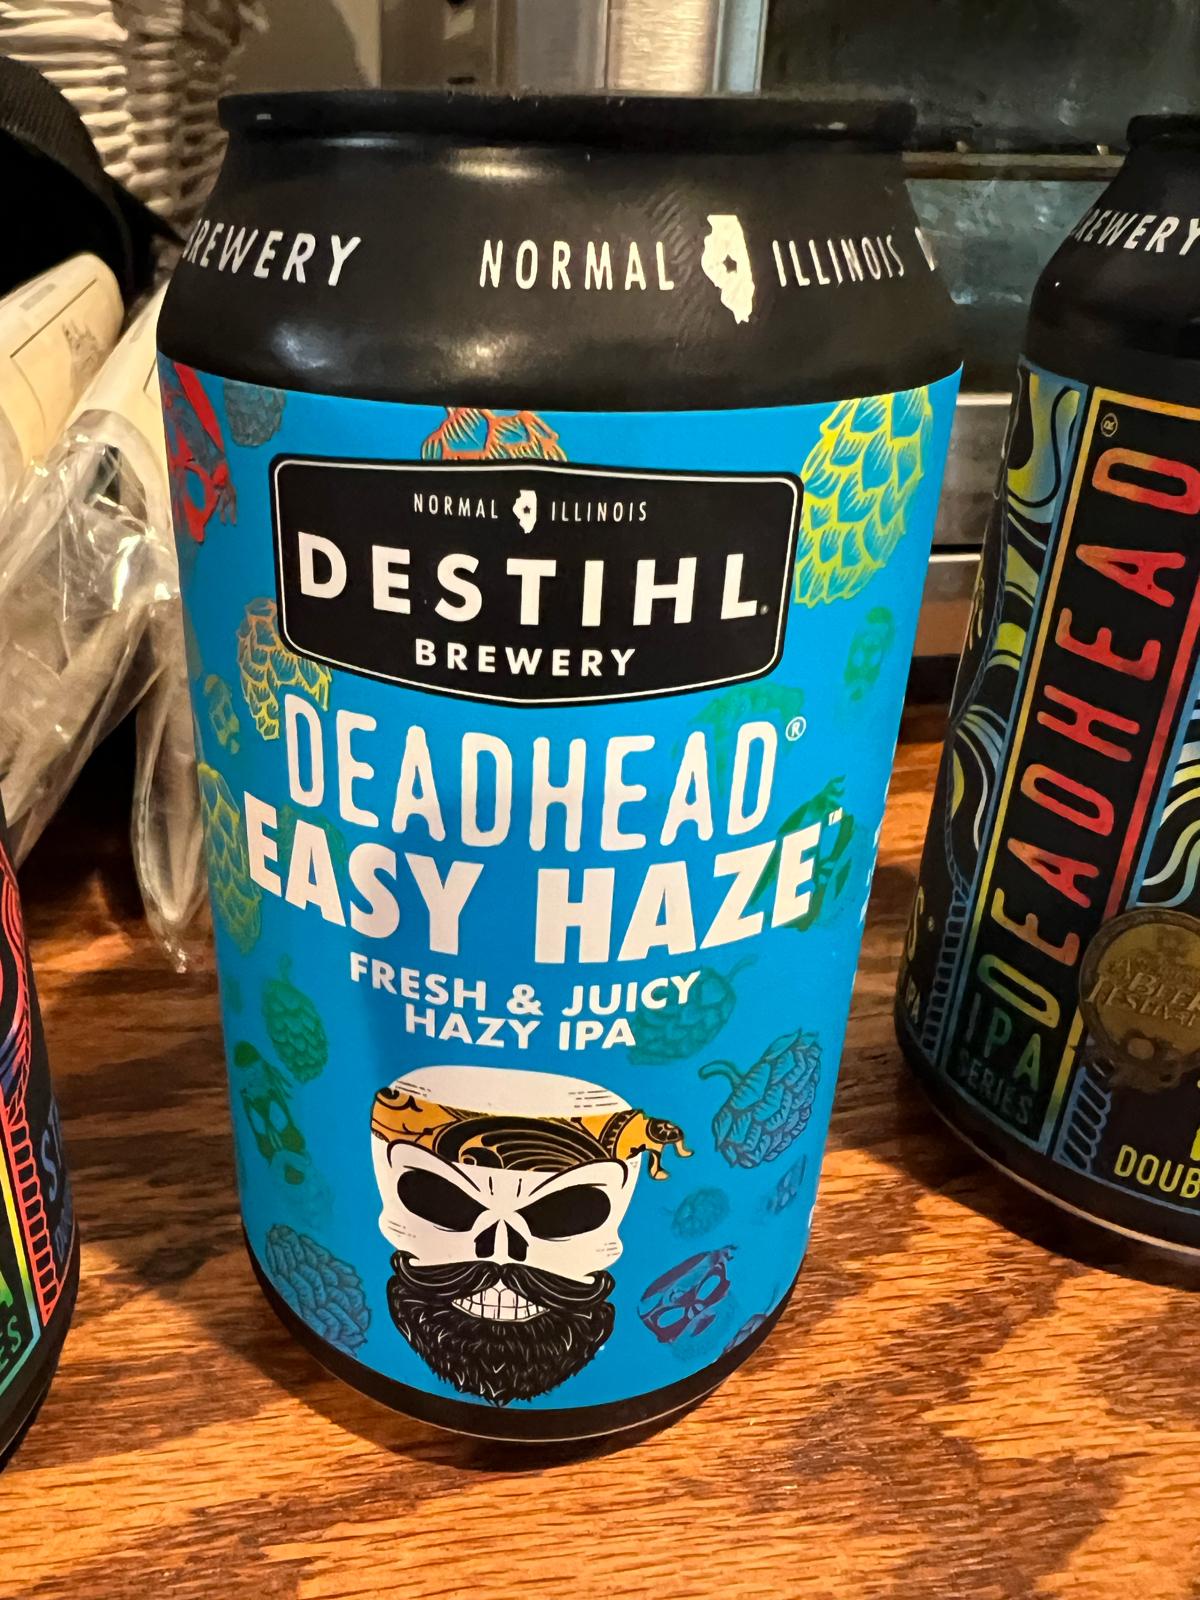 Deadhead IPA: Easy Haze